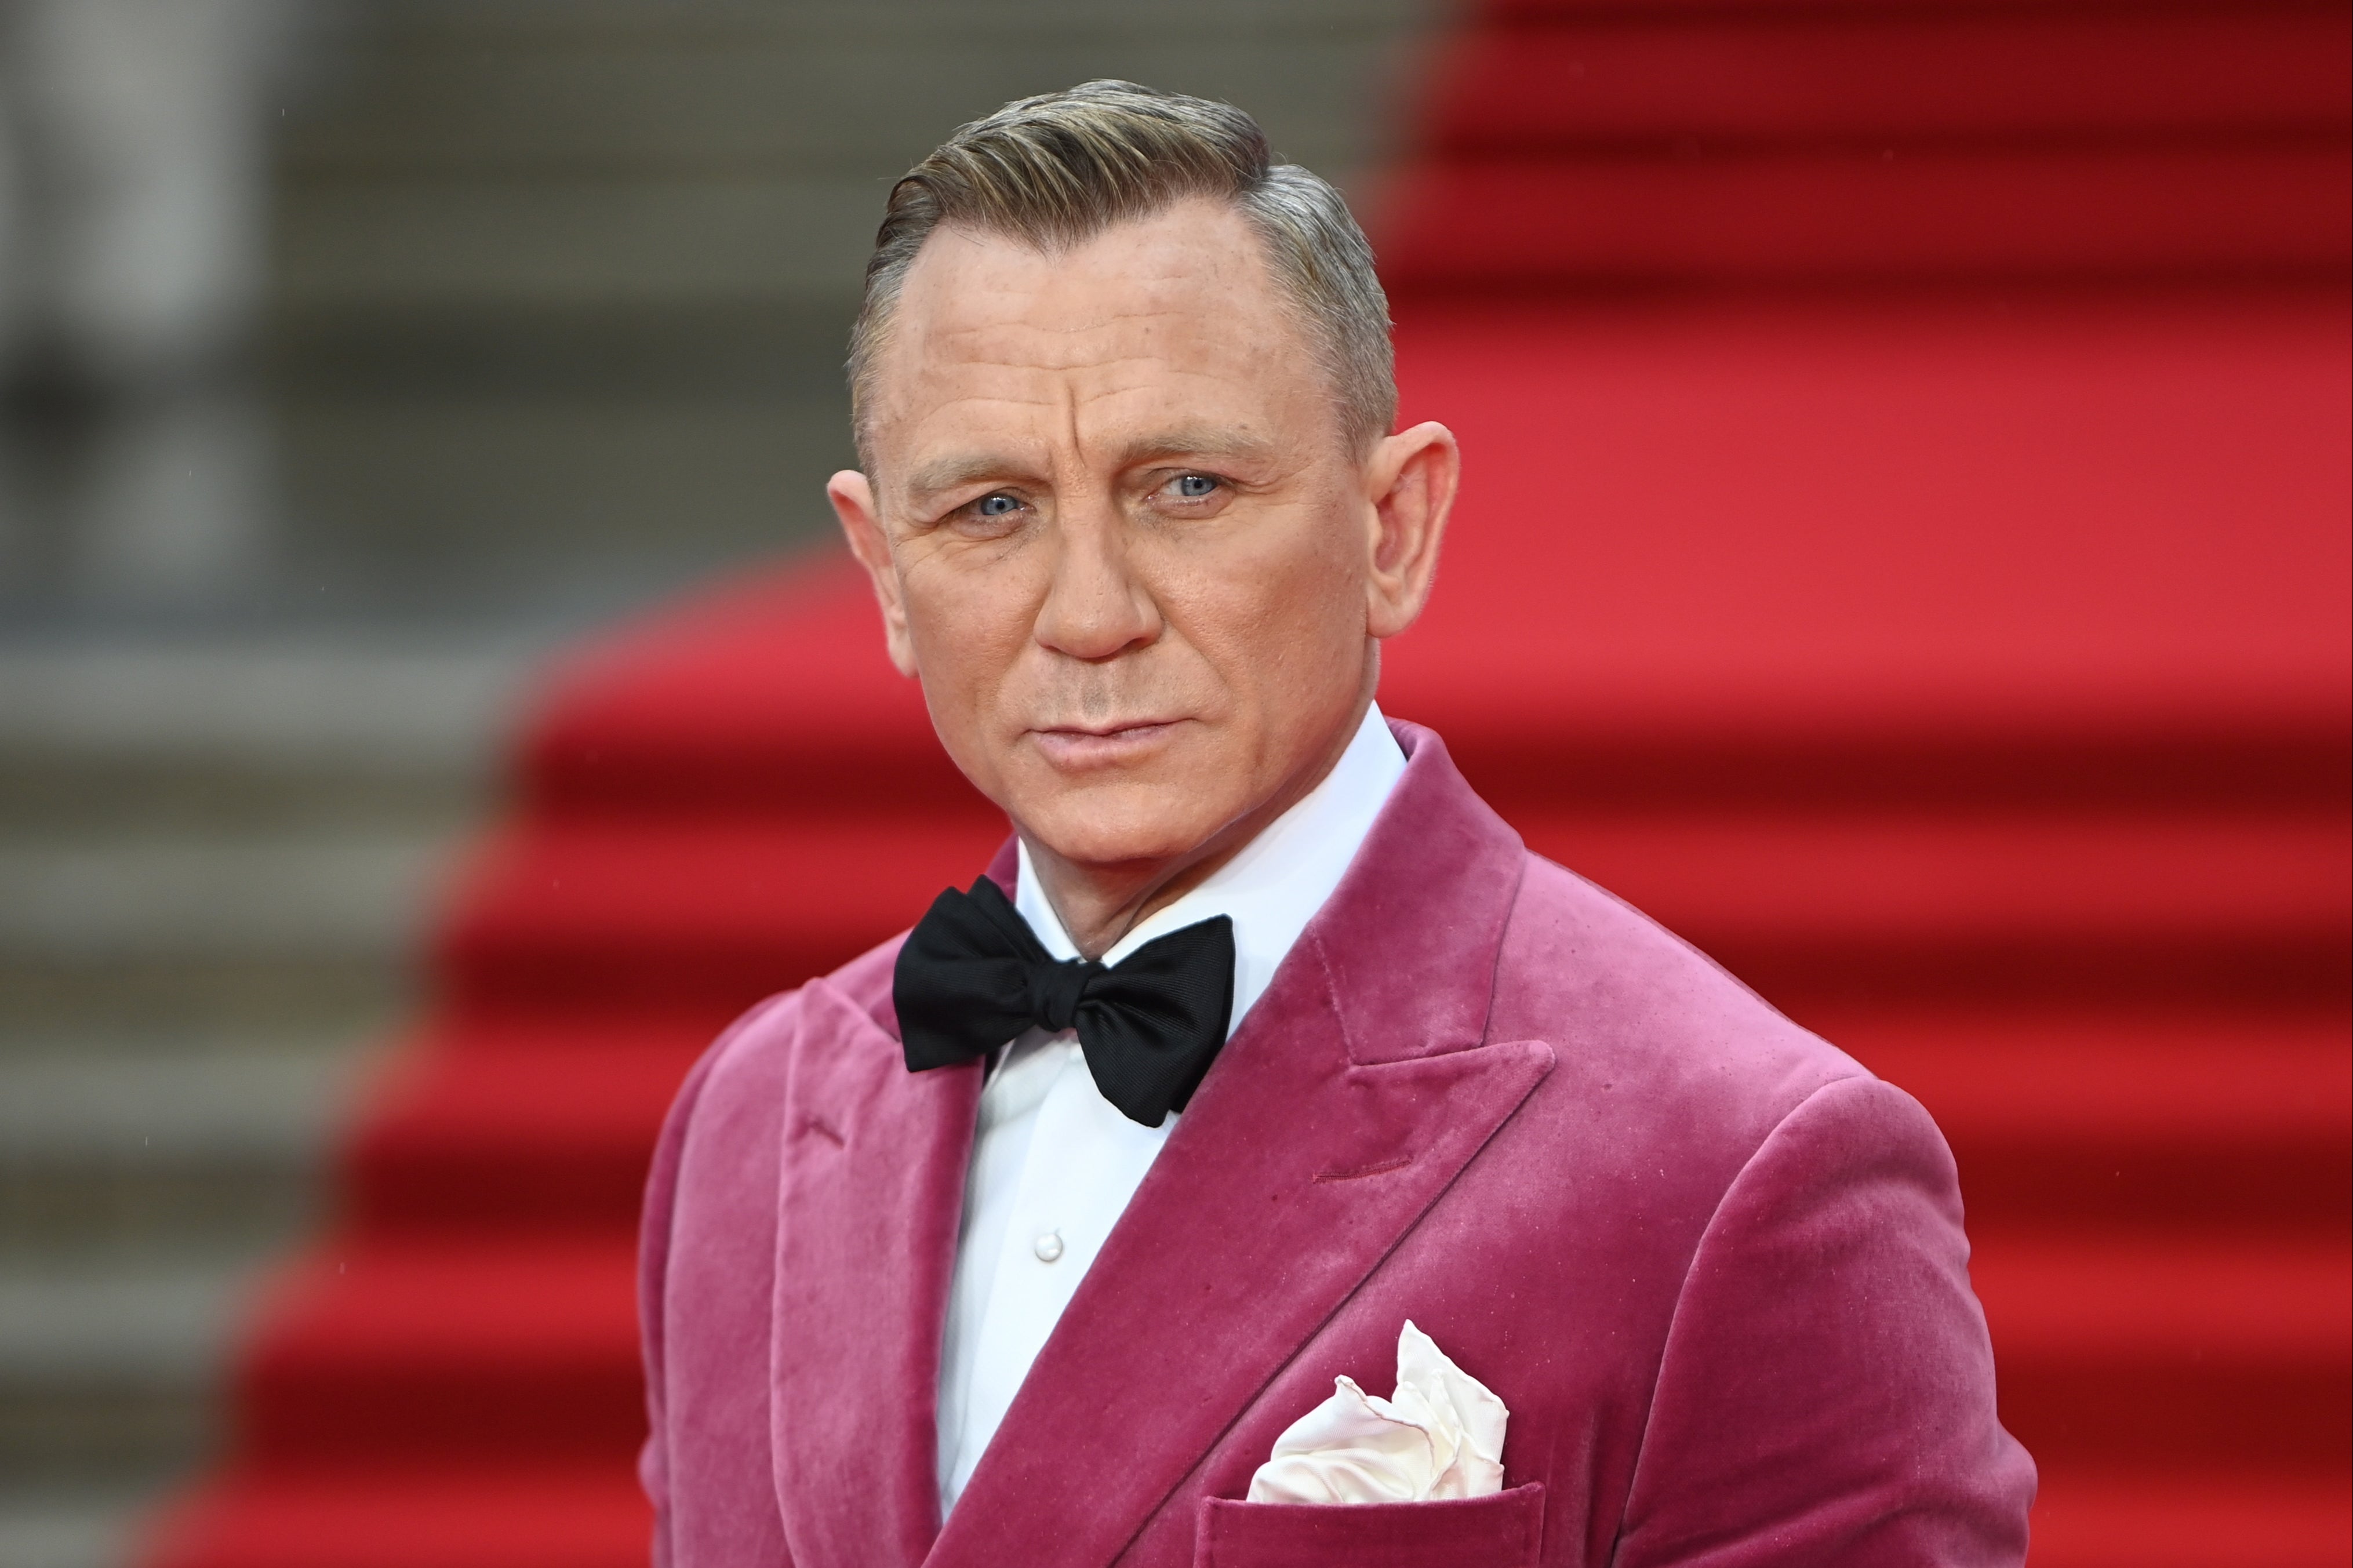 ‘No Time To Die’ is Daniel Craig’s last 007 film